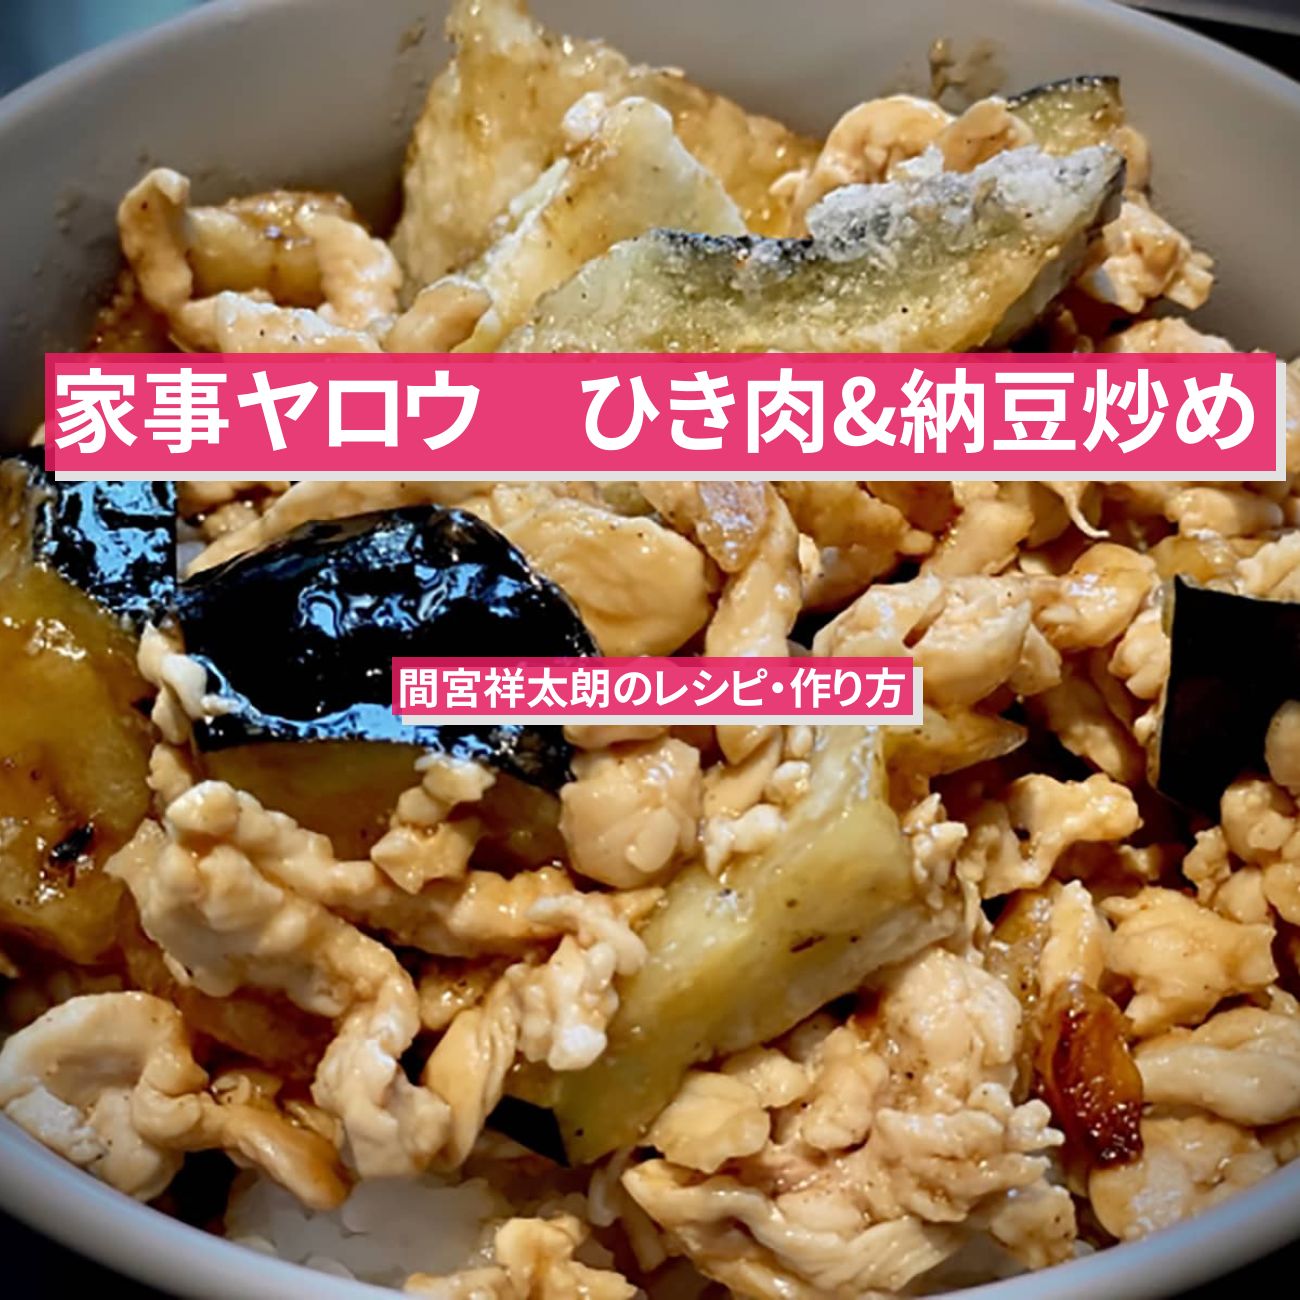 【家事ヤロウ】『ひき肉&納豆炒め』間宮祥太朗のロジャースレシピ・作り方